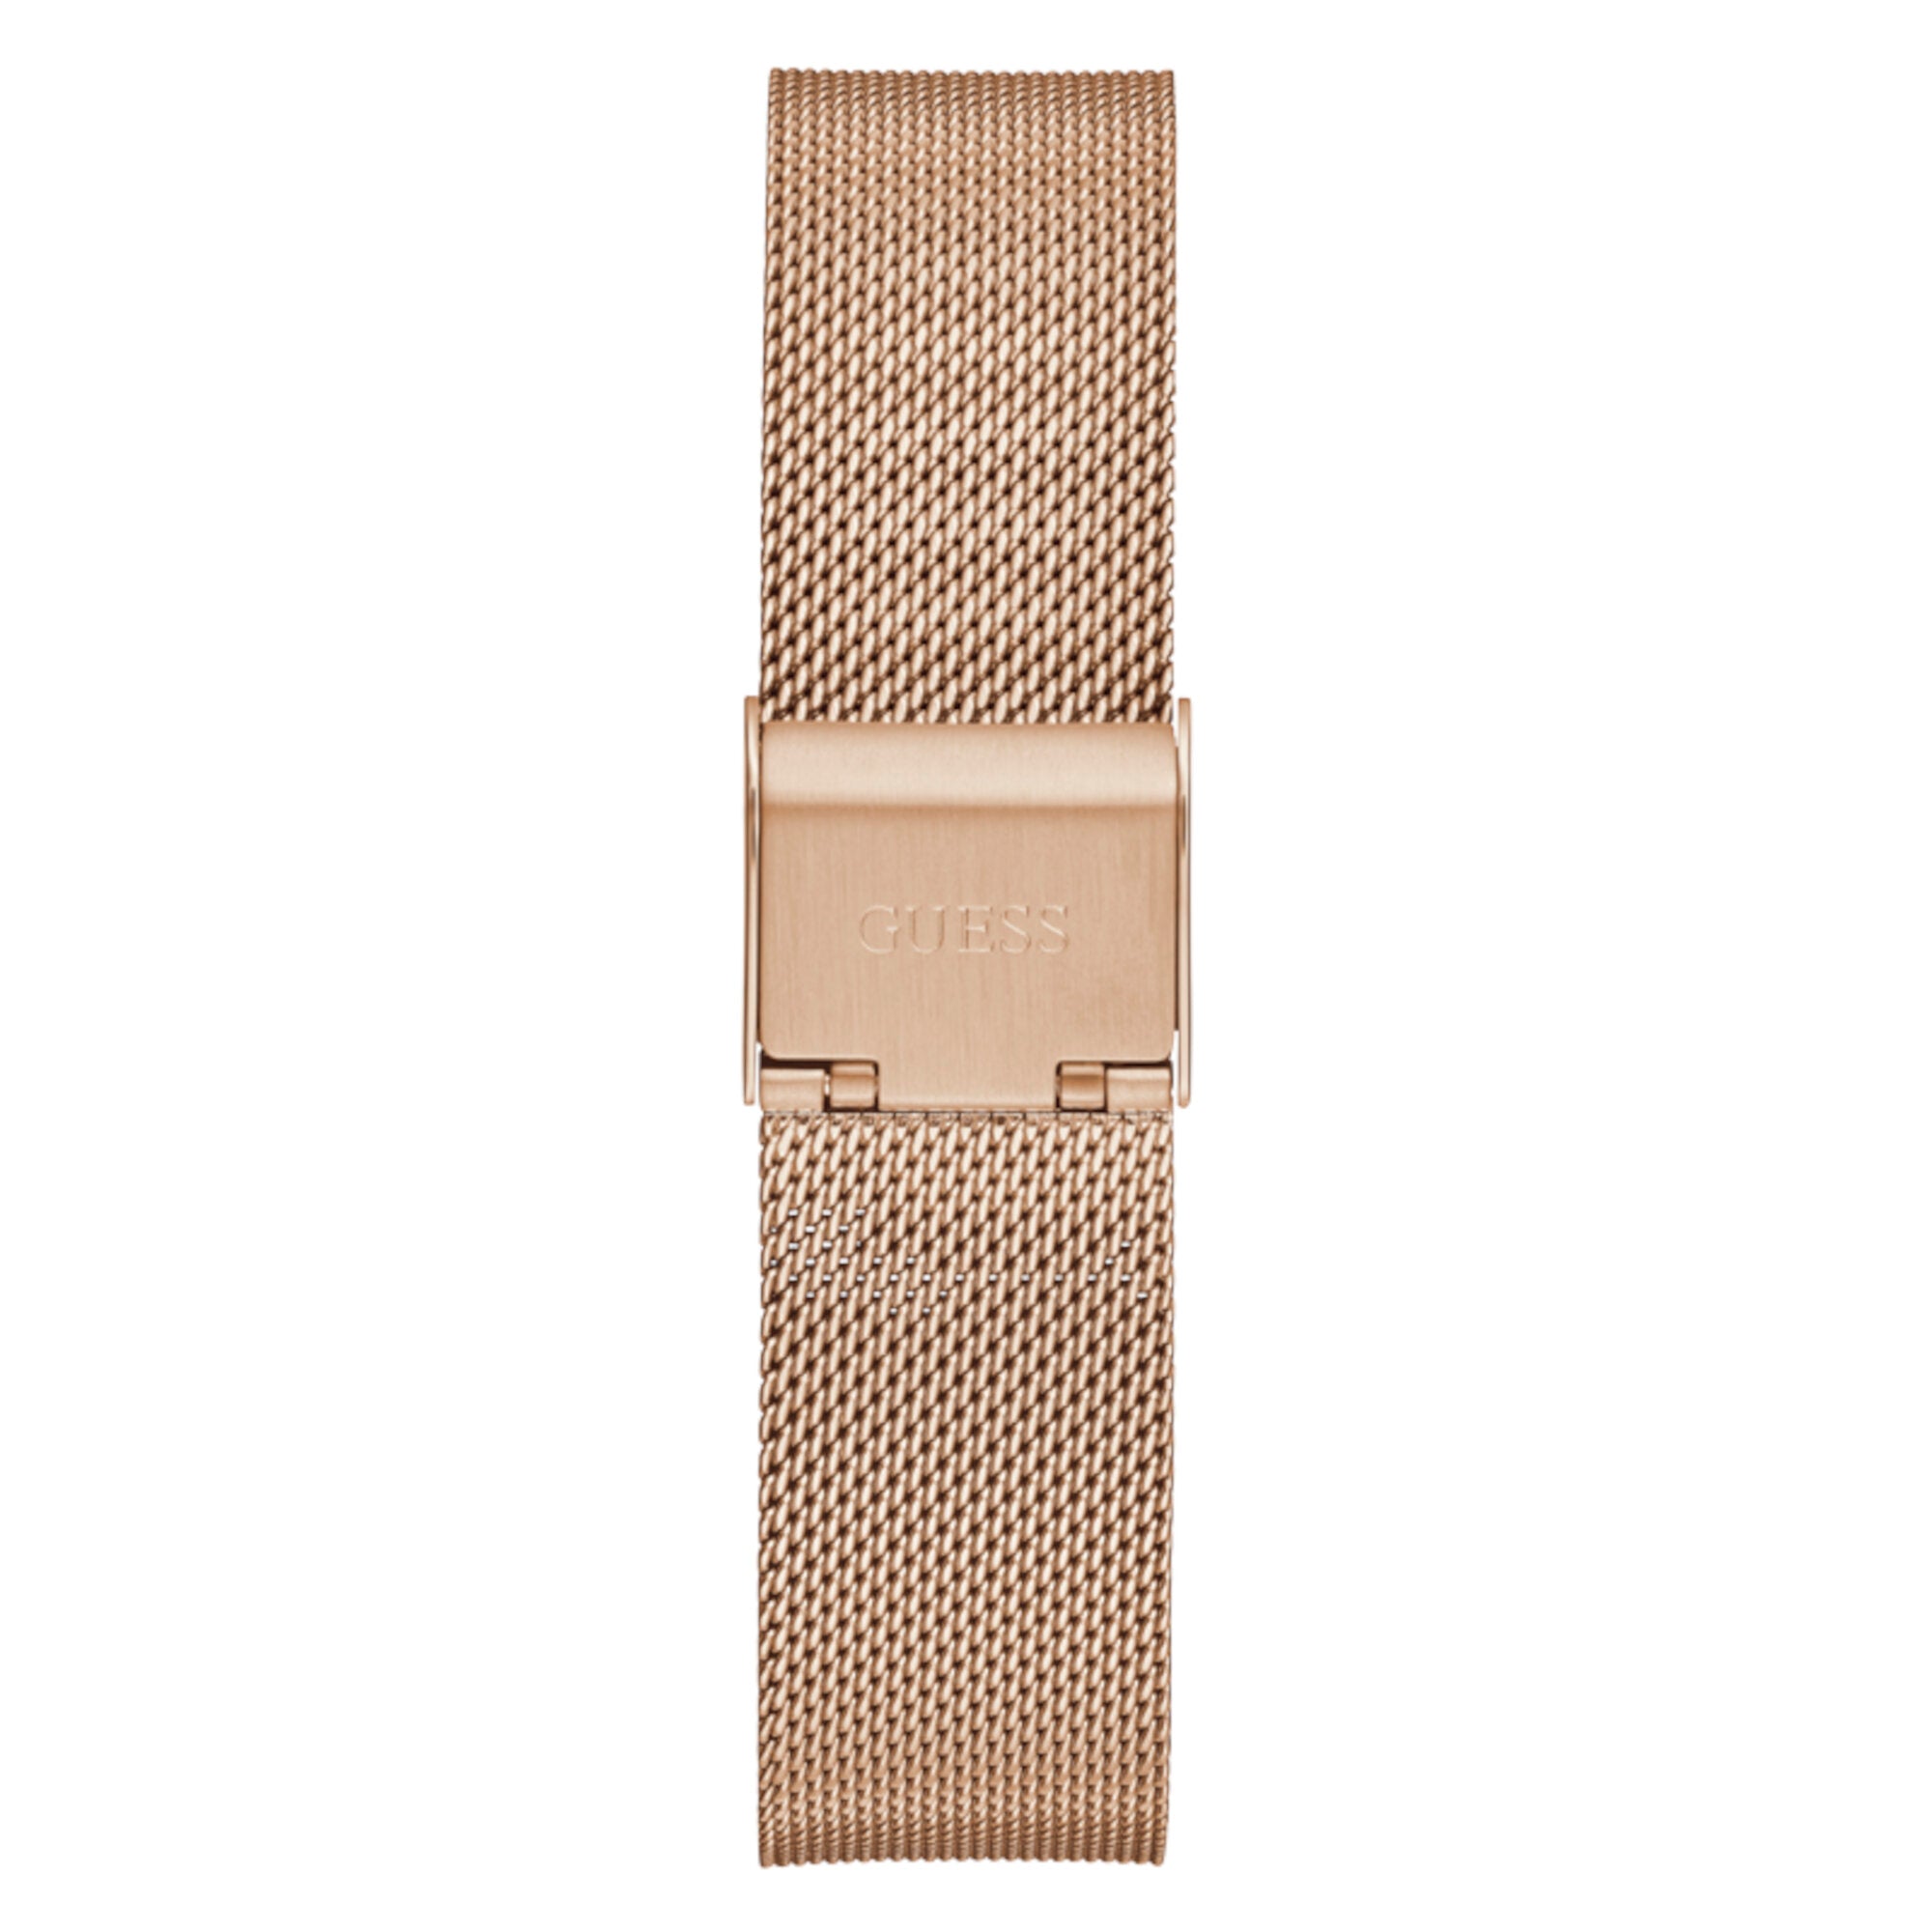 Reloj de Dama + aretes Guess oro rosa con aplicaciones de cristal